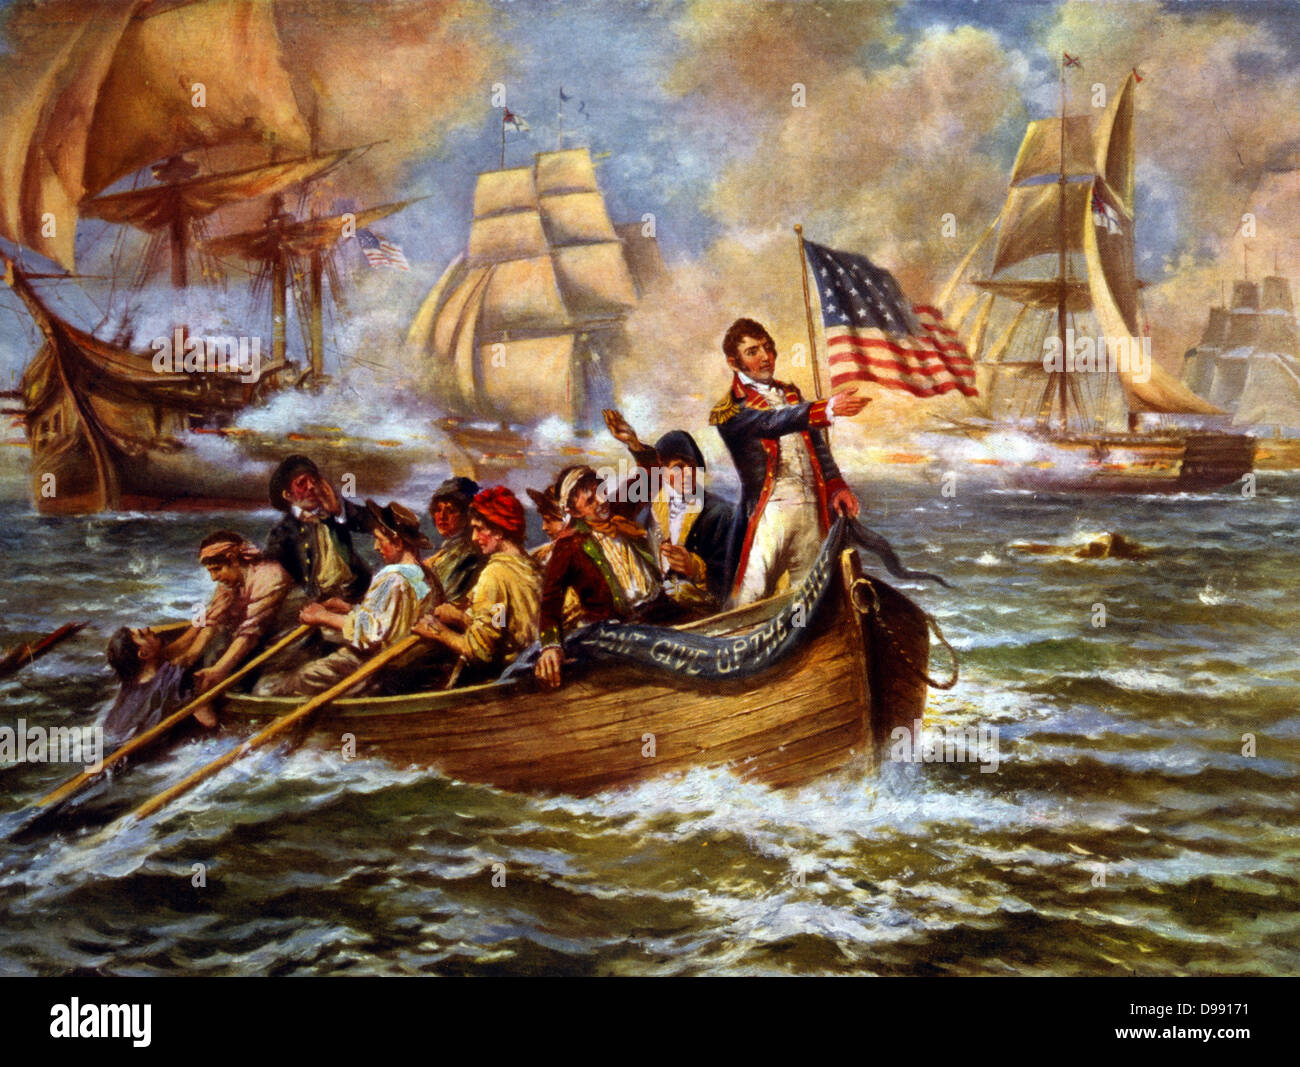 Guerra de 1812: la batalla del Lago Erie (put-in-Bay), Ohio, el 10 de septiembre de 1813. Oliver Perry en peligro de arco pequeño bote a remo, luego de abandonar su buque insignia 'Lawrence' transferir a "Niagara". Decisiva victoria americana sobre Gran Bretaña. Naval. C1911 Foto de stock